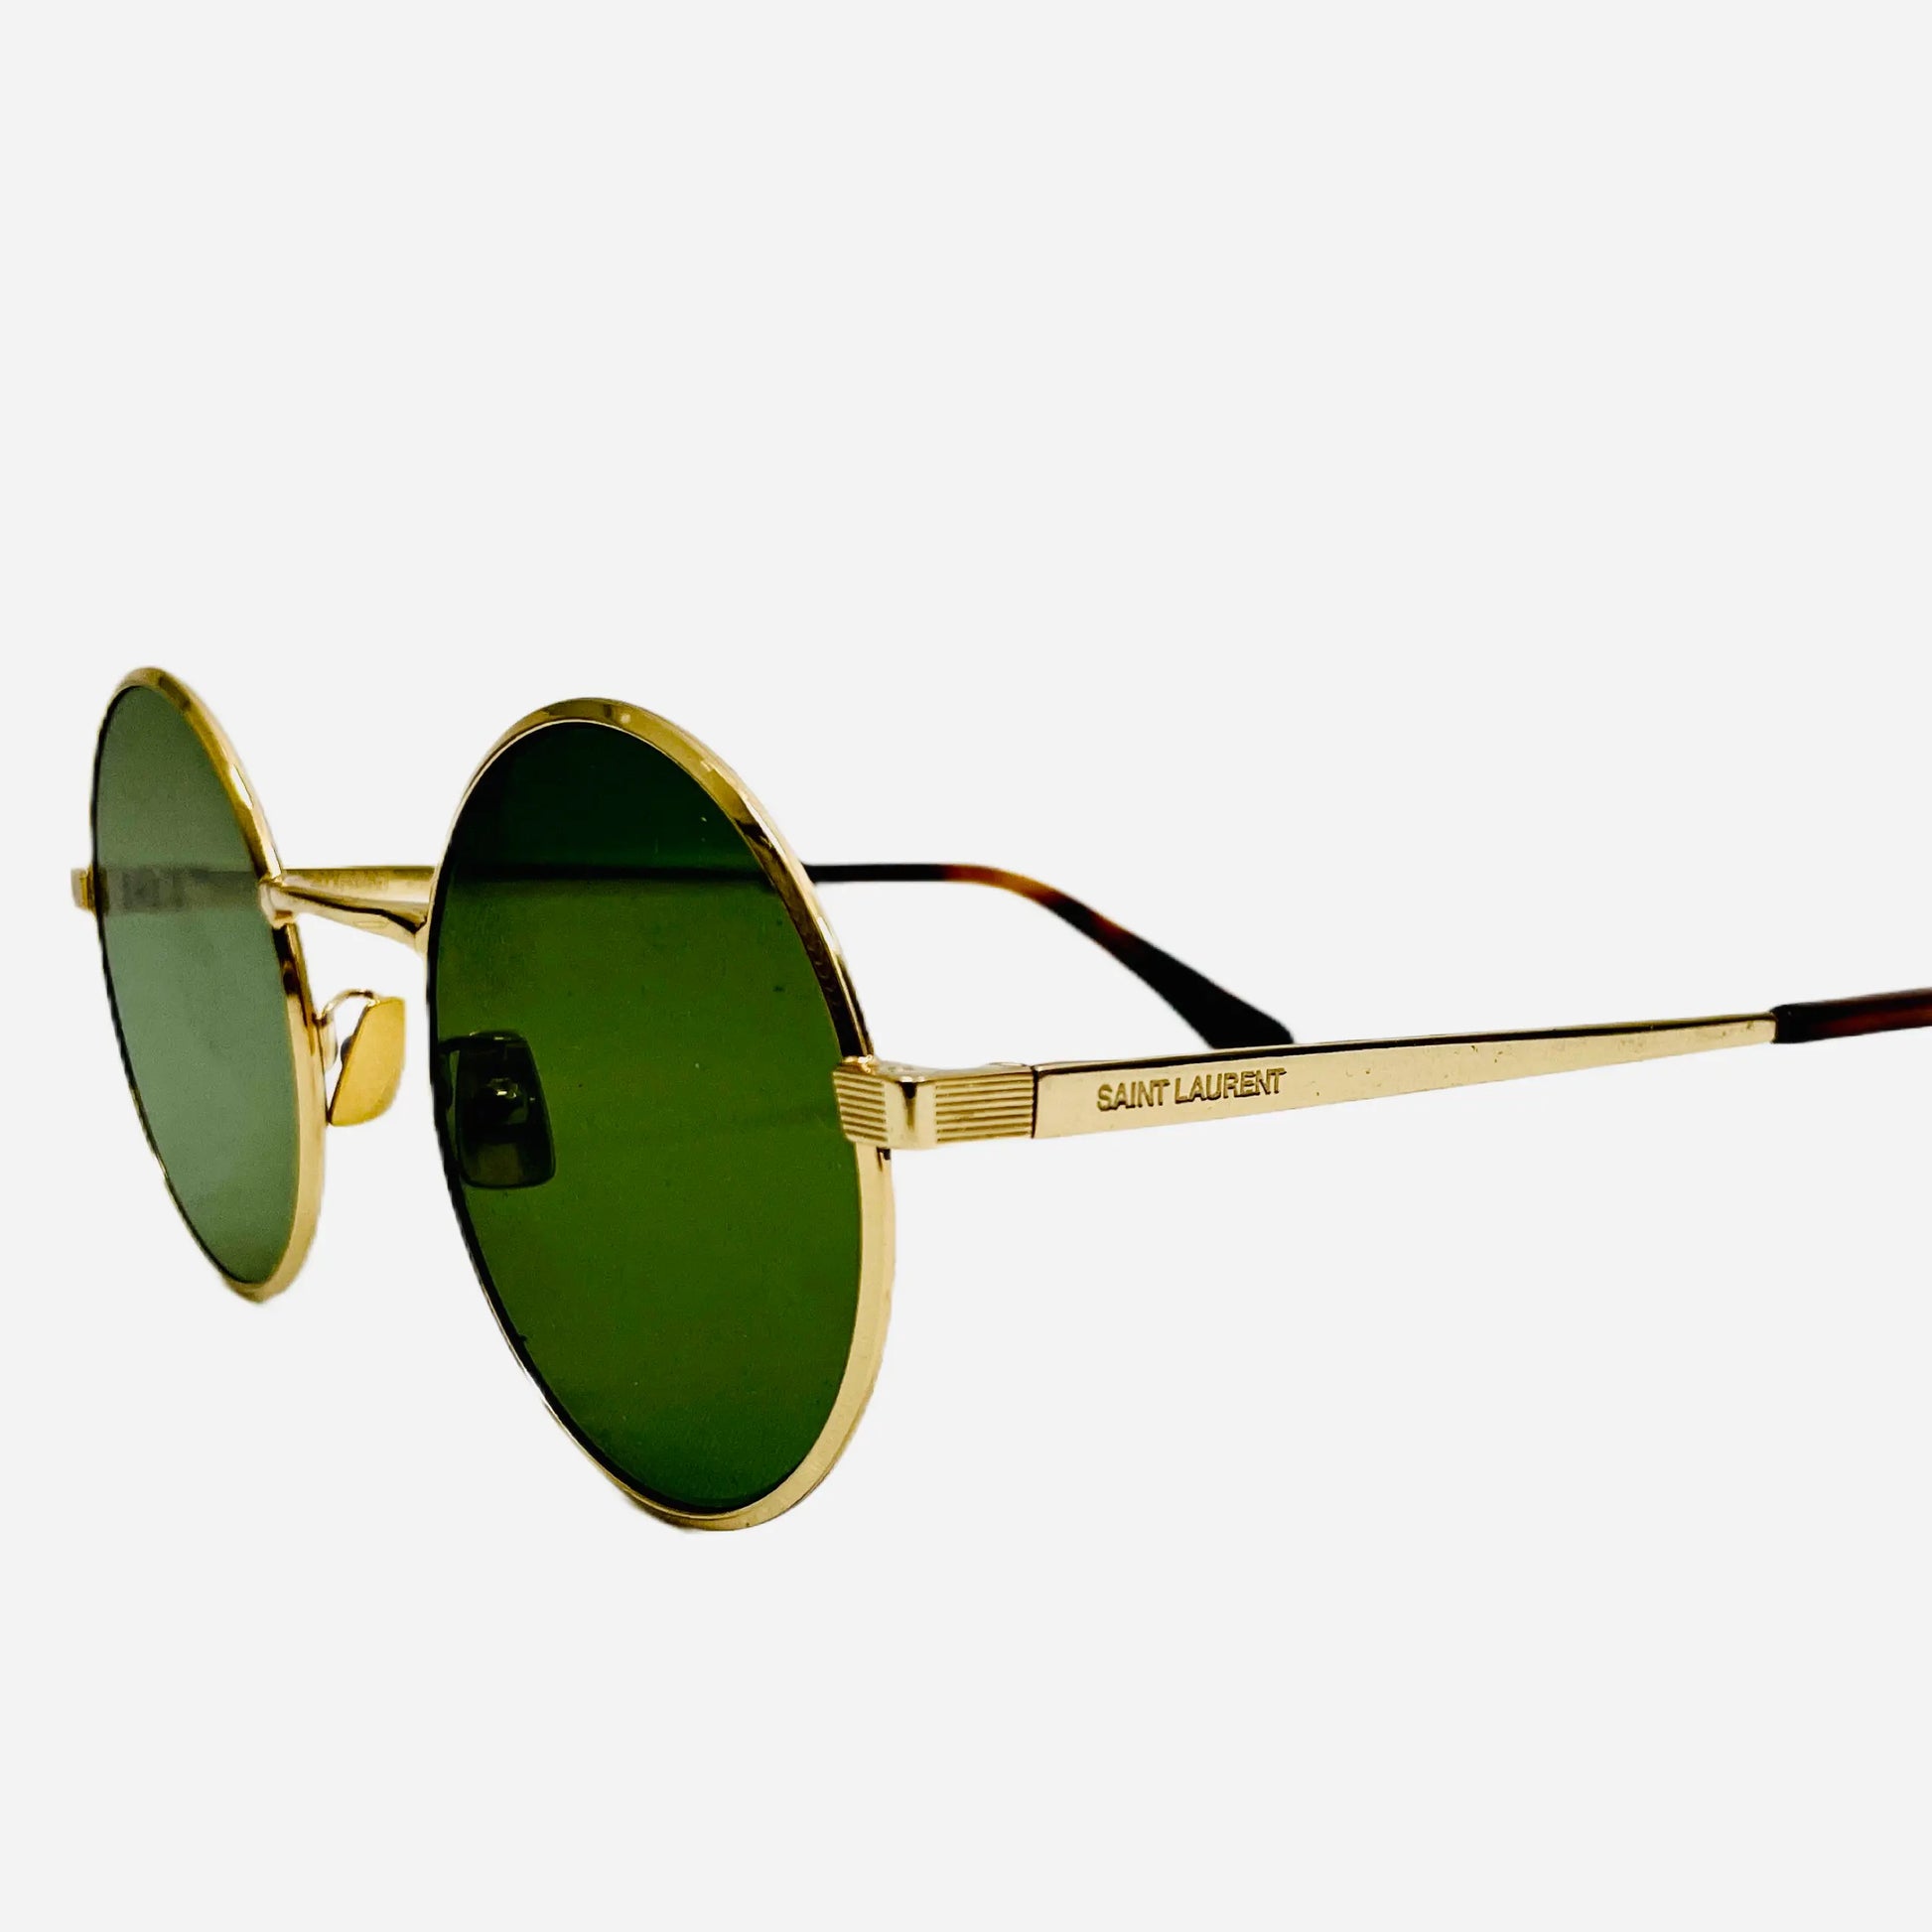        Vintage-Saint-Laurent-Sonnenbrille-Sunglasses-SL-136-ZERO-002-colour-gold-front-side